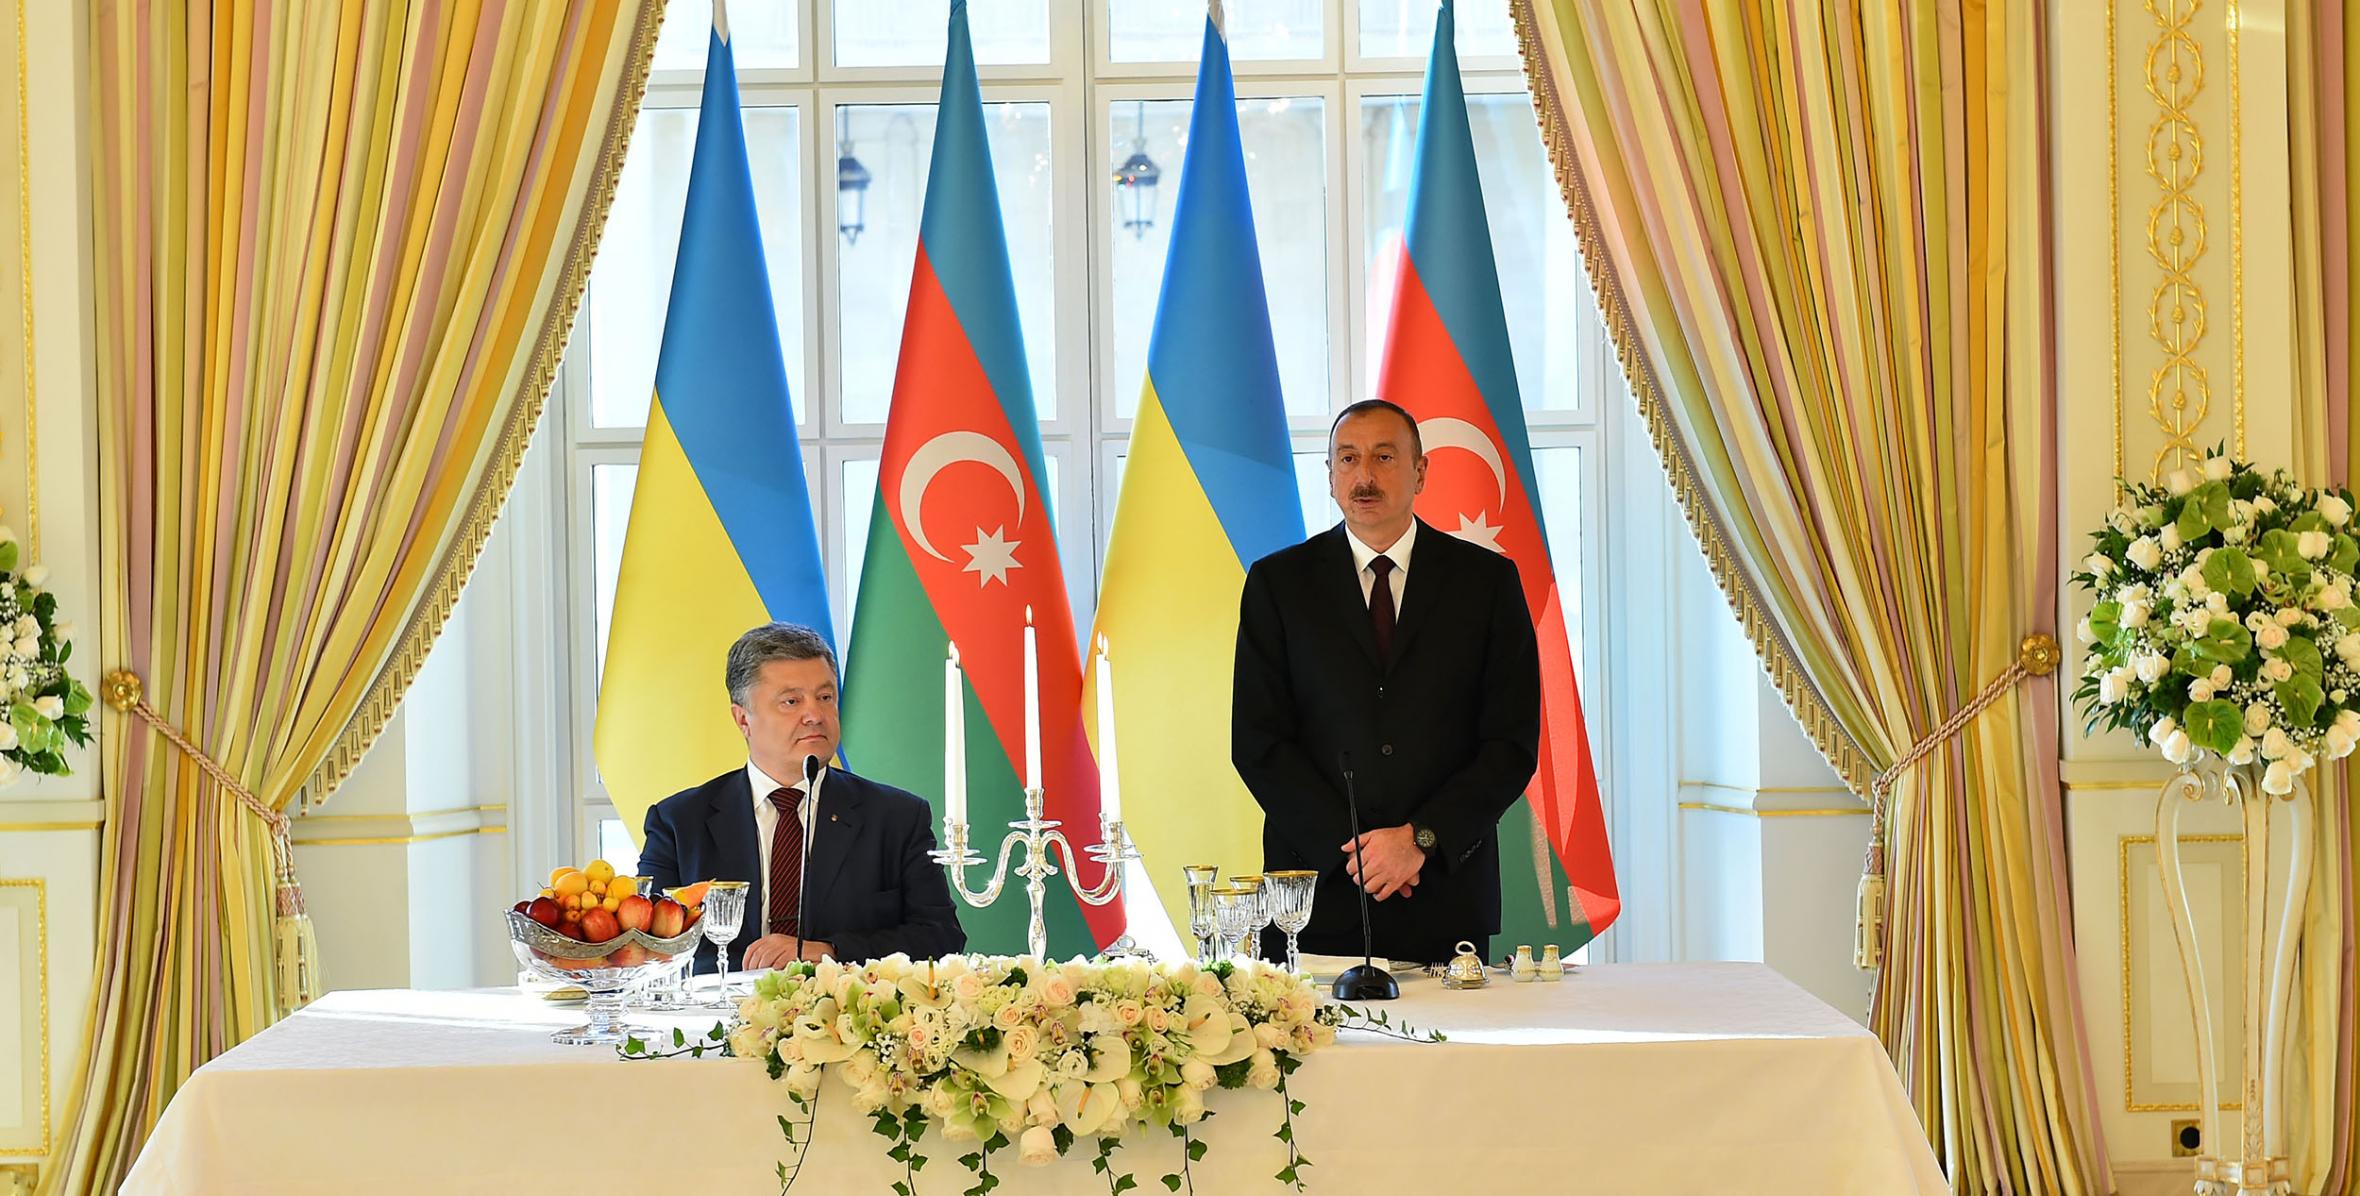 От имени Ильхама Алиева был устроен официальный прием в честь находящегося с визитом в нашей стране Президента Украины Петро Порошенко